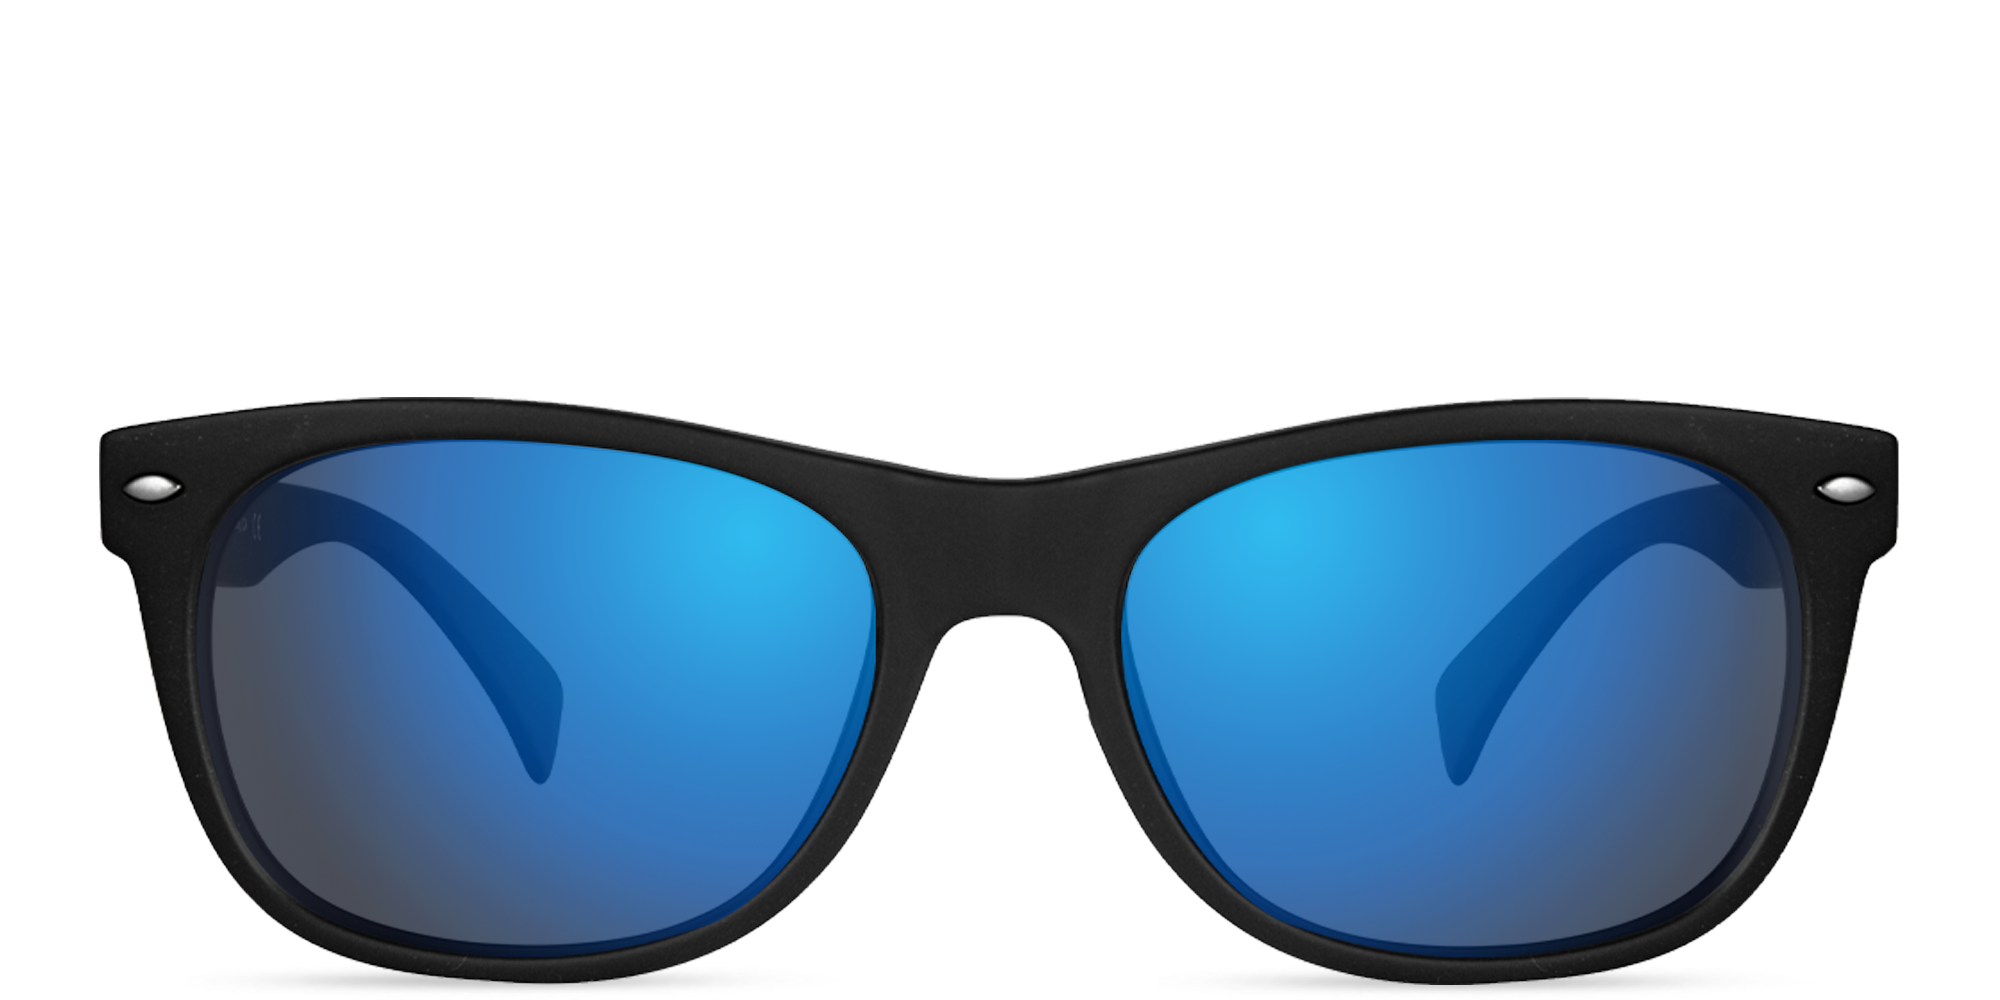 EnChroma® Color Blind Glasses | Color Blind Eyewear